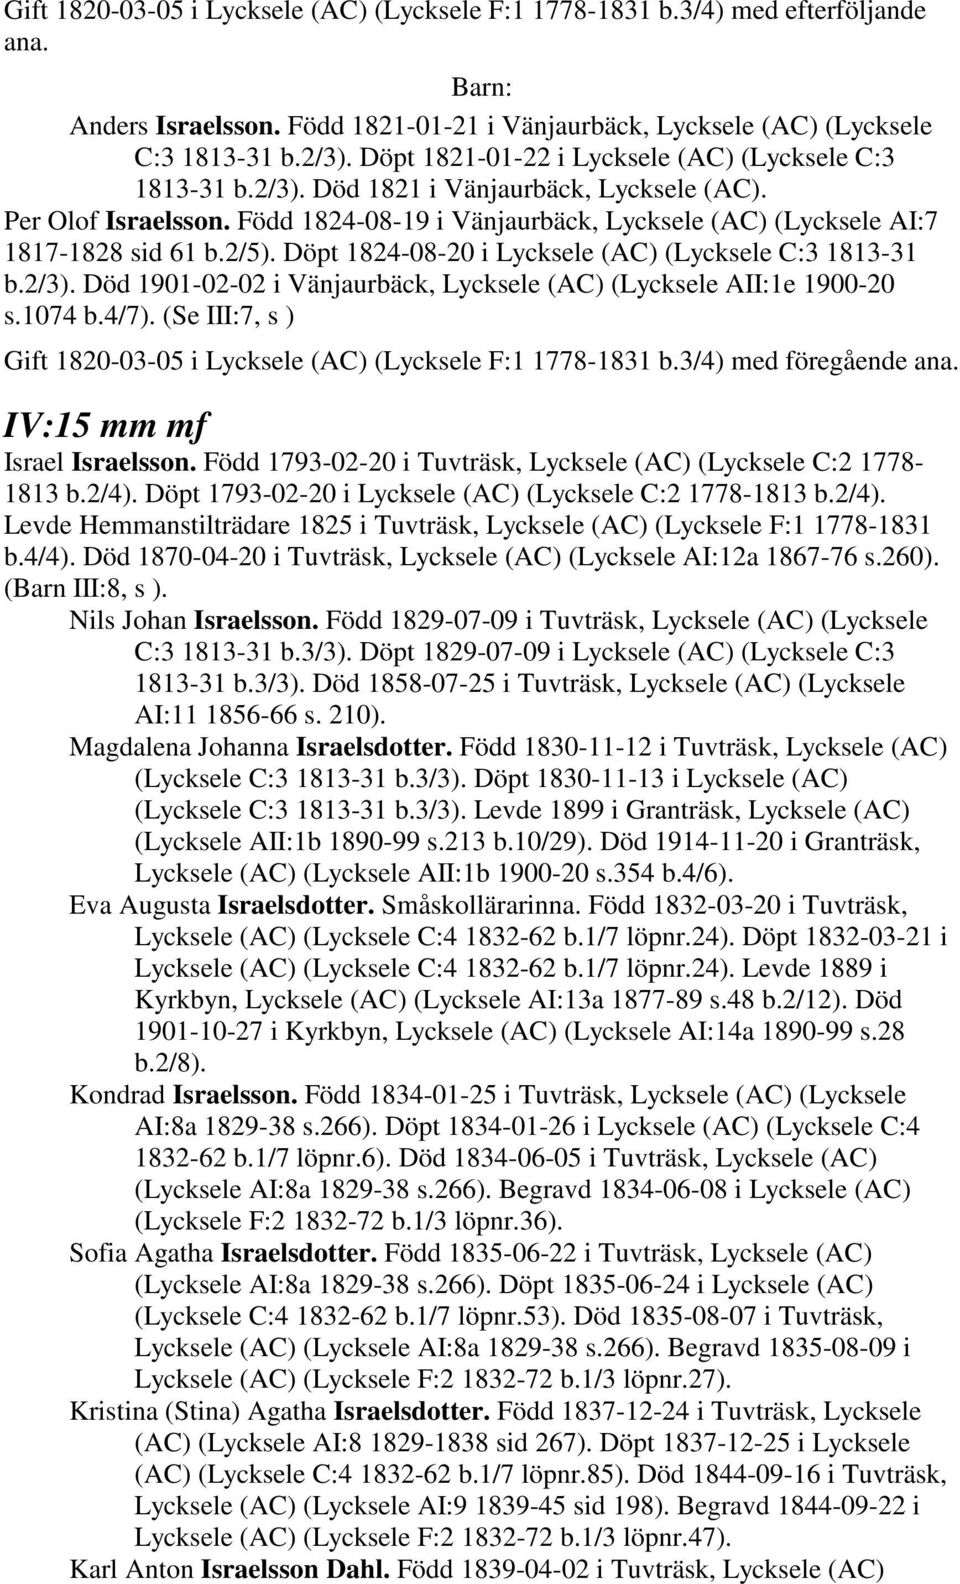 Född 1824-08-19 i Vänjaurbäck, Lycksele (AC) (Lycksele AI:7 1817-1828 sid 61 b.2/5). Döpt 1824-08-20 i Lycksele (AC) (Lycksele C:3 1813-31 b.2/3).